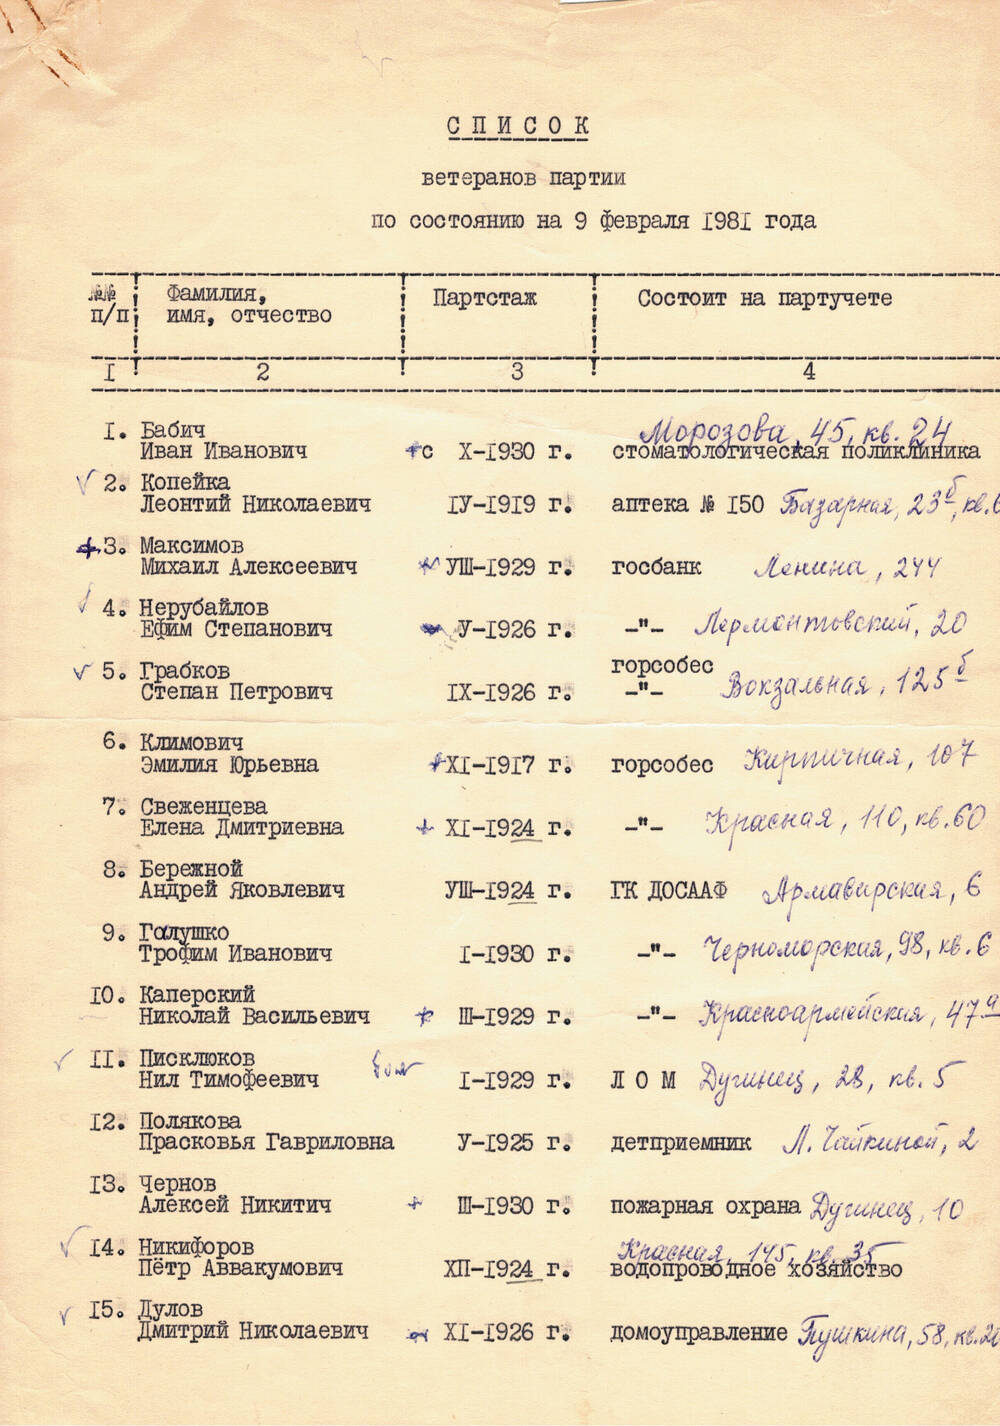 Список ветеранов партии на 9 февраля 1981 год. На 4 листах.